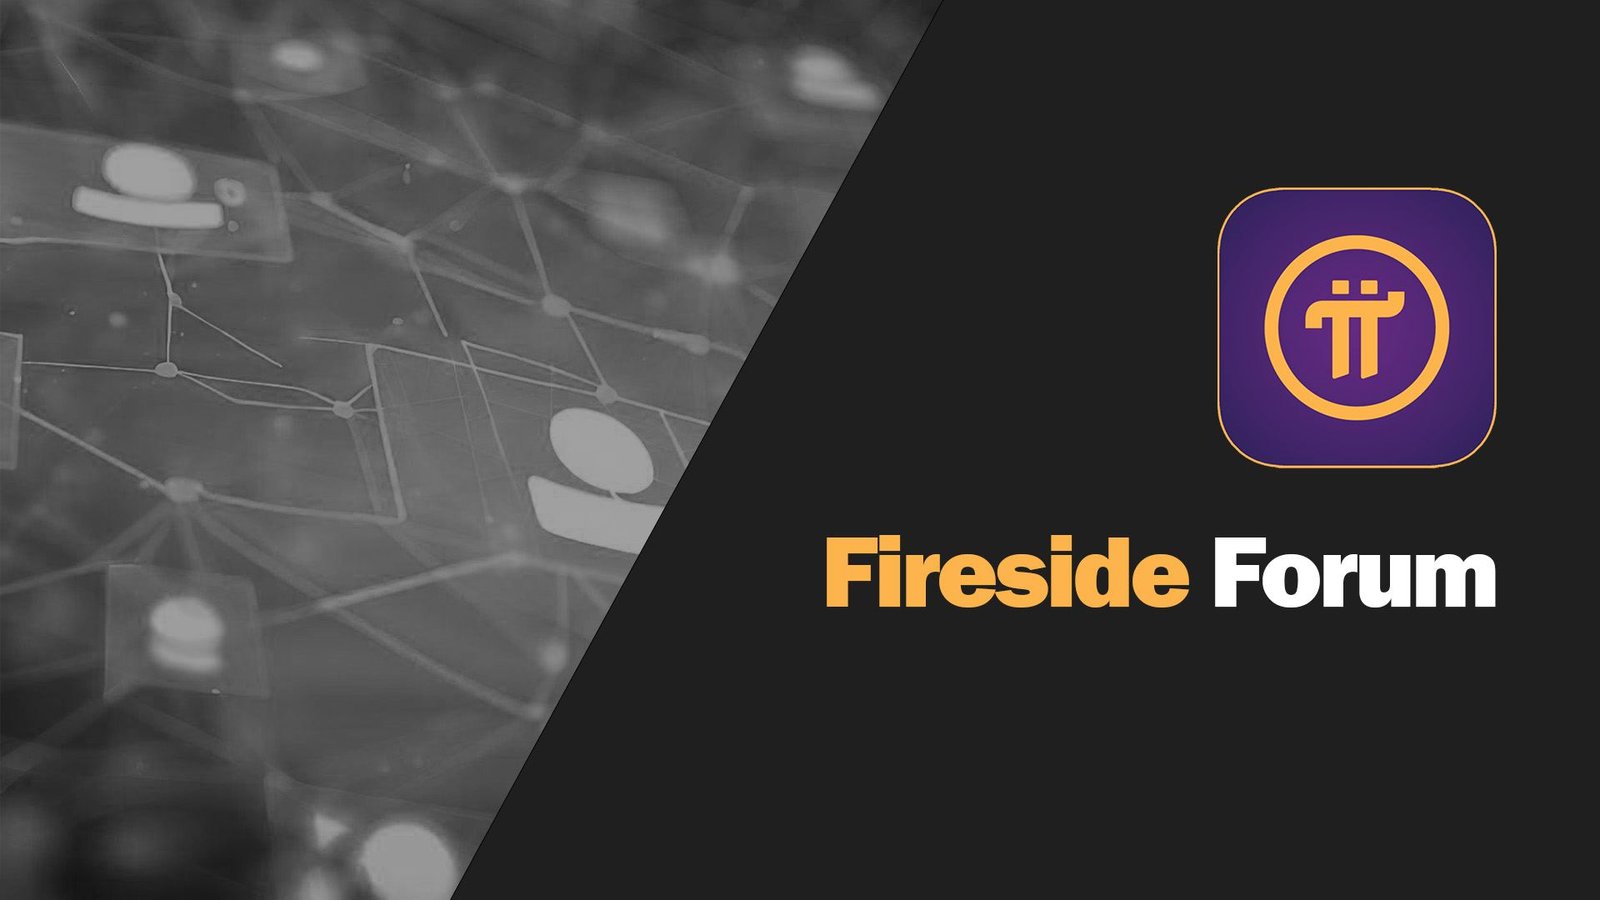 Pi Network Fireside Forum